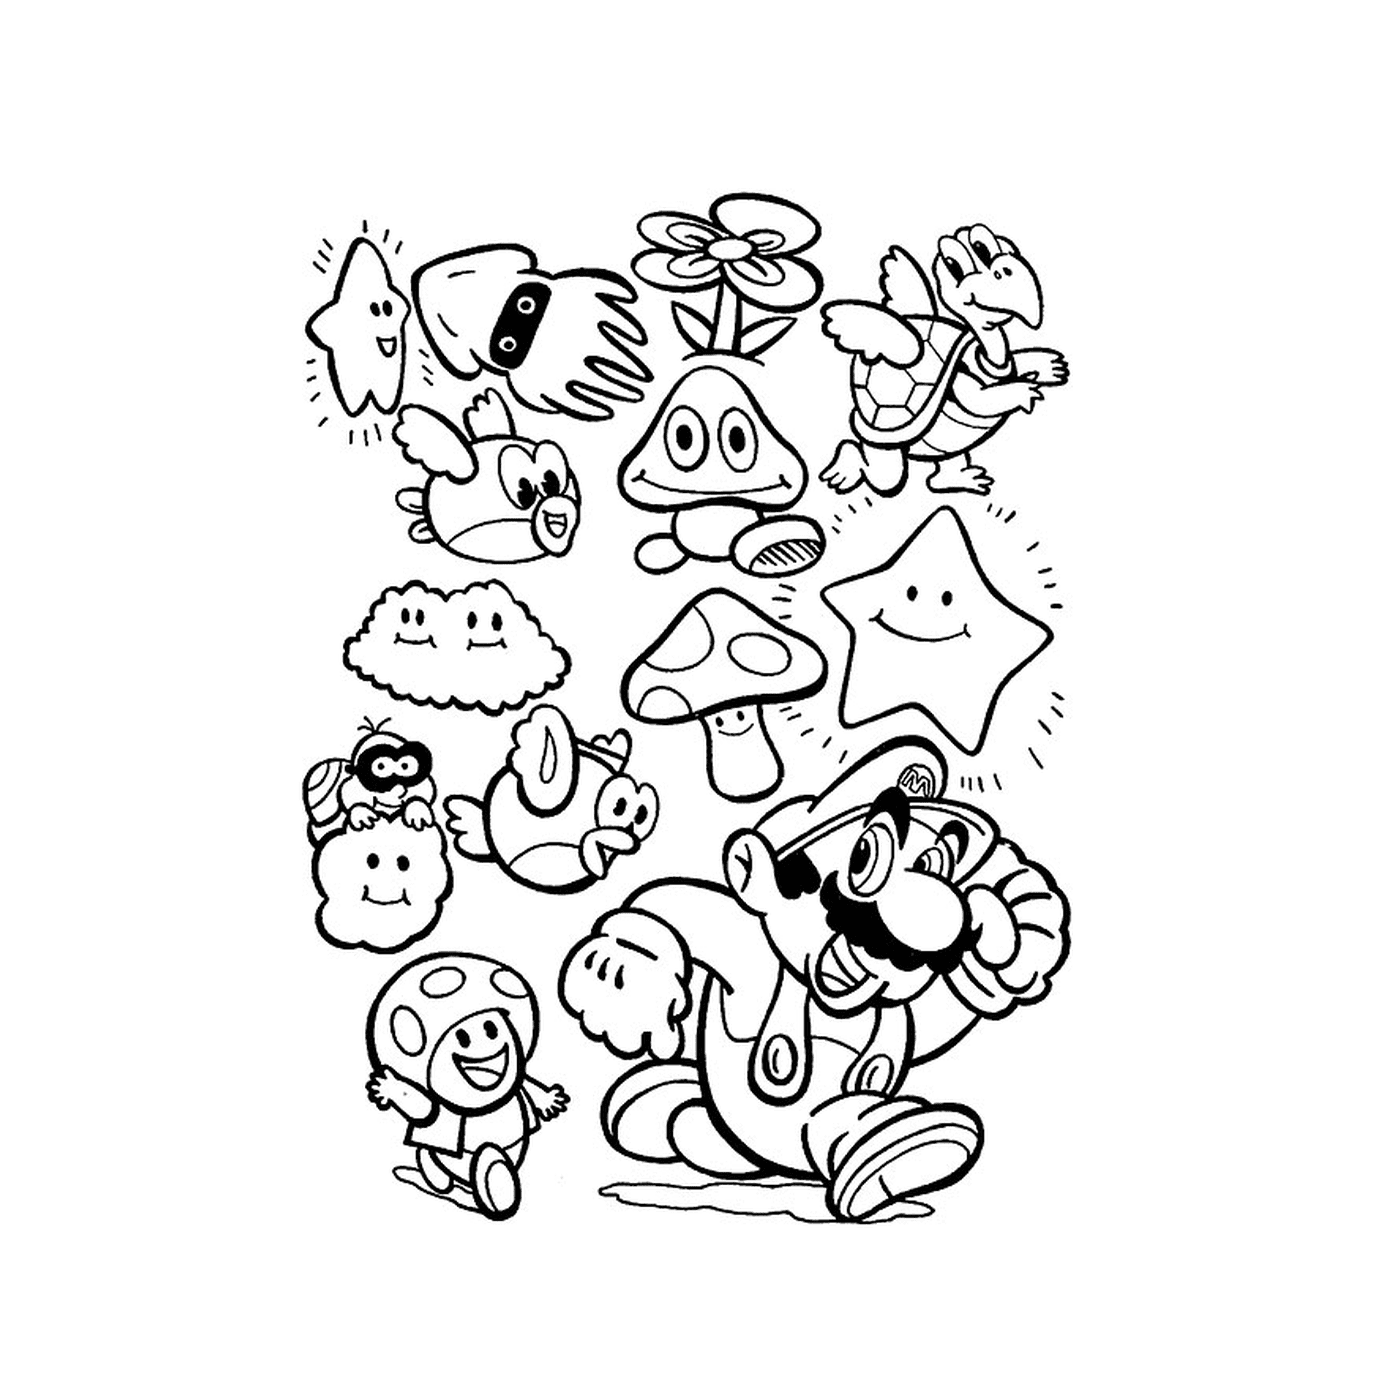  Un grupo de personajes de dibujos animados juntos 